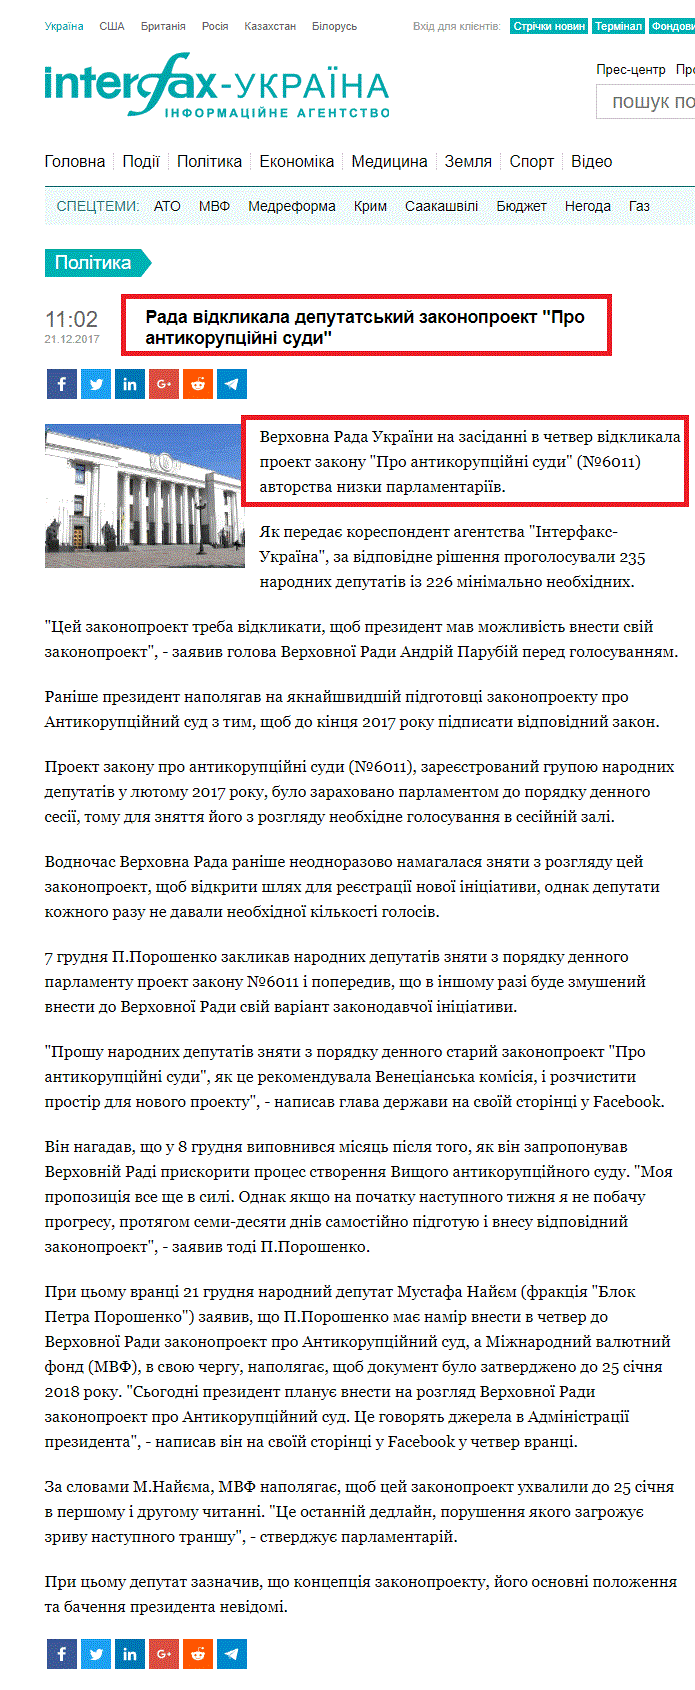 http://ua.interfax.com.ua/news/political/471787.html